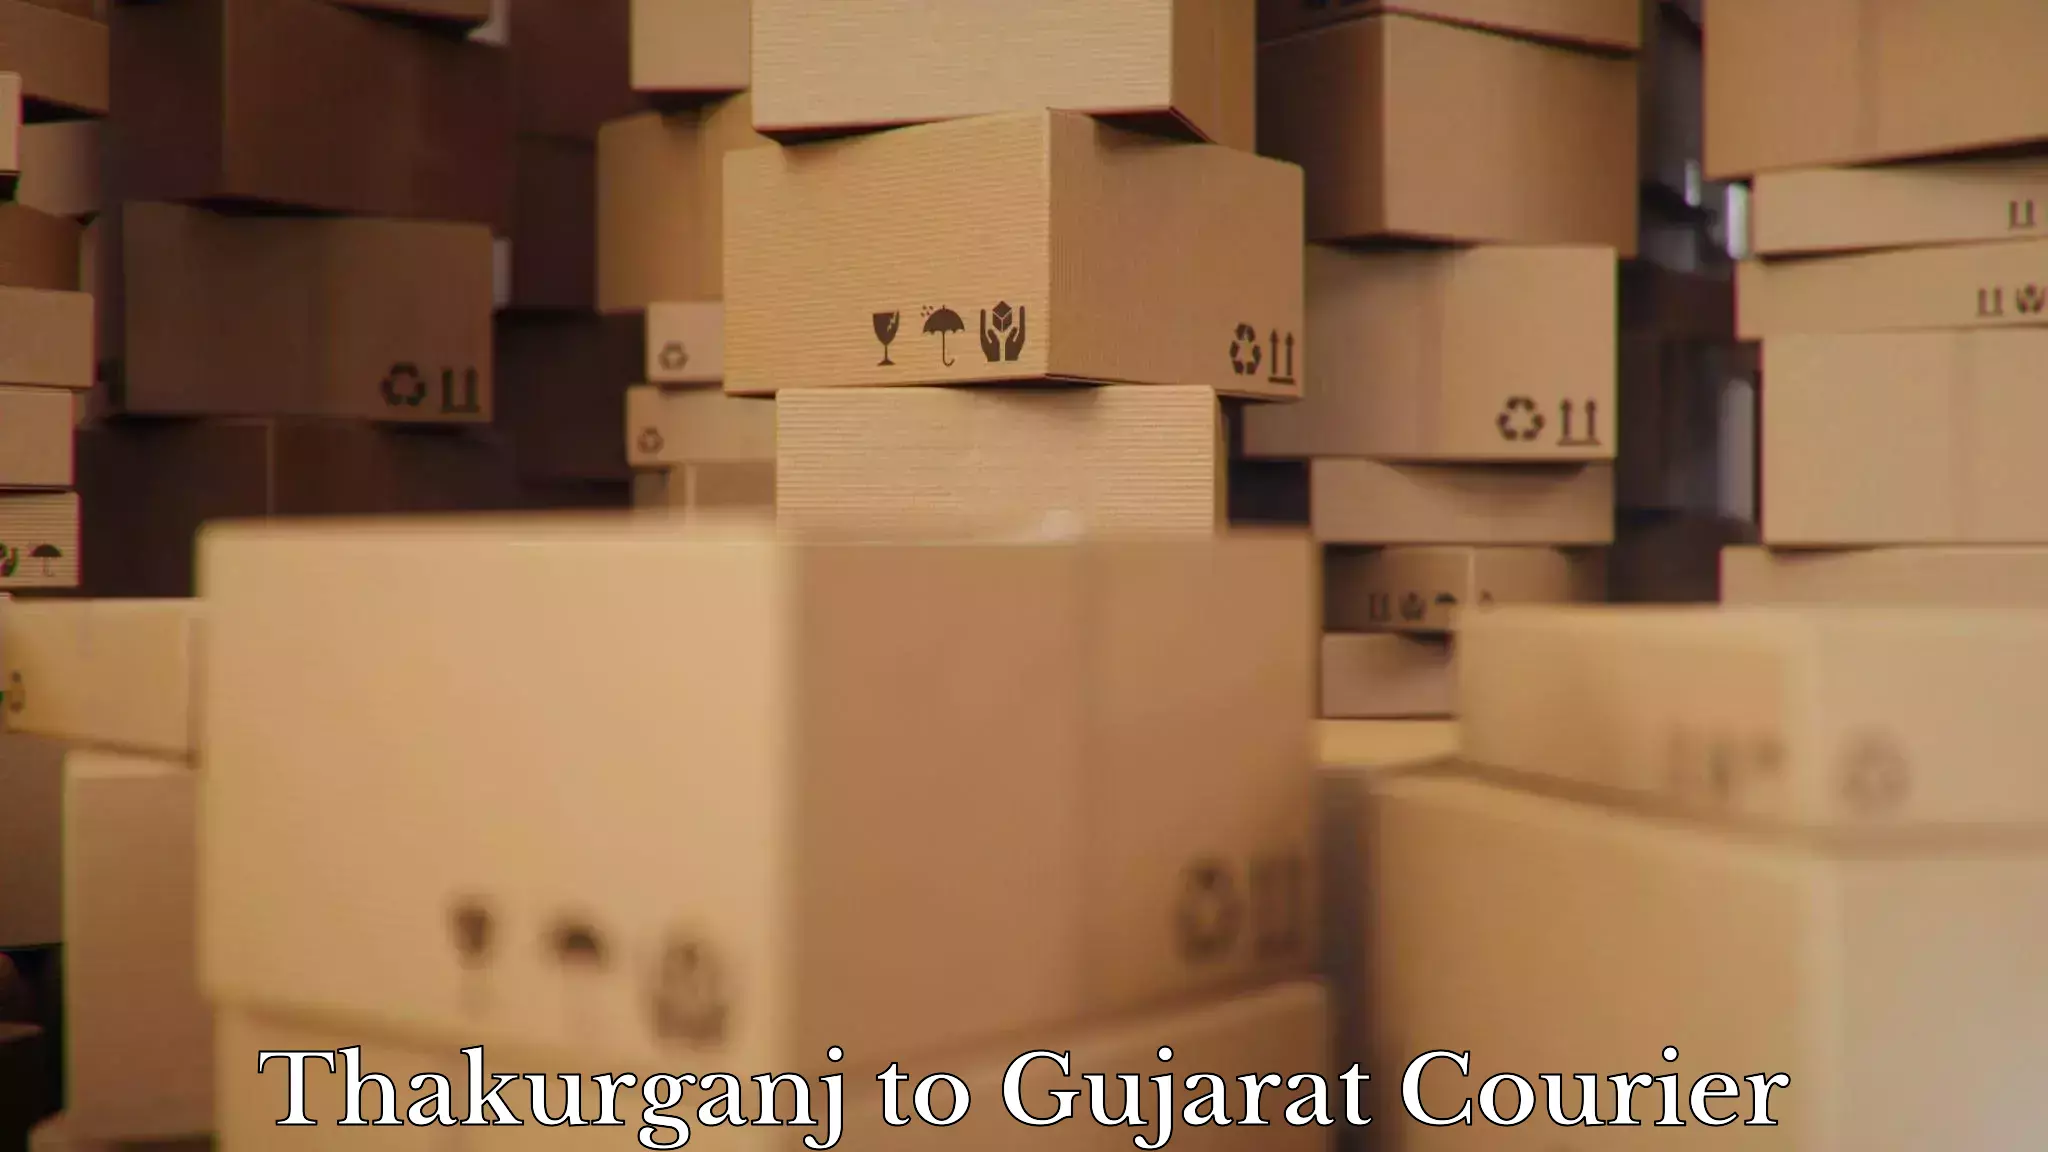 Furniture transport experts Thakurganj to Gujarat